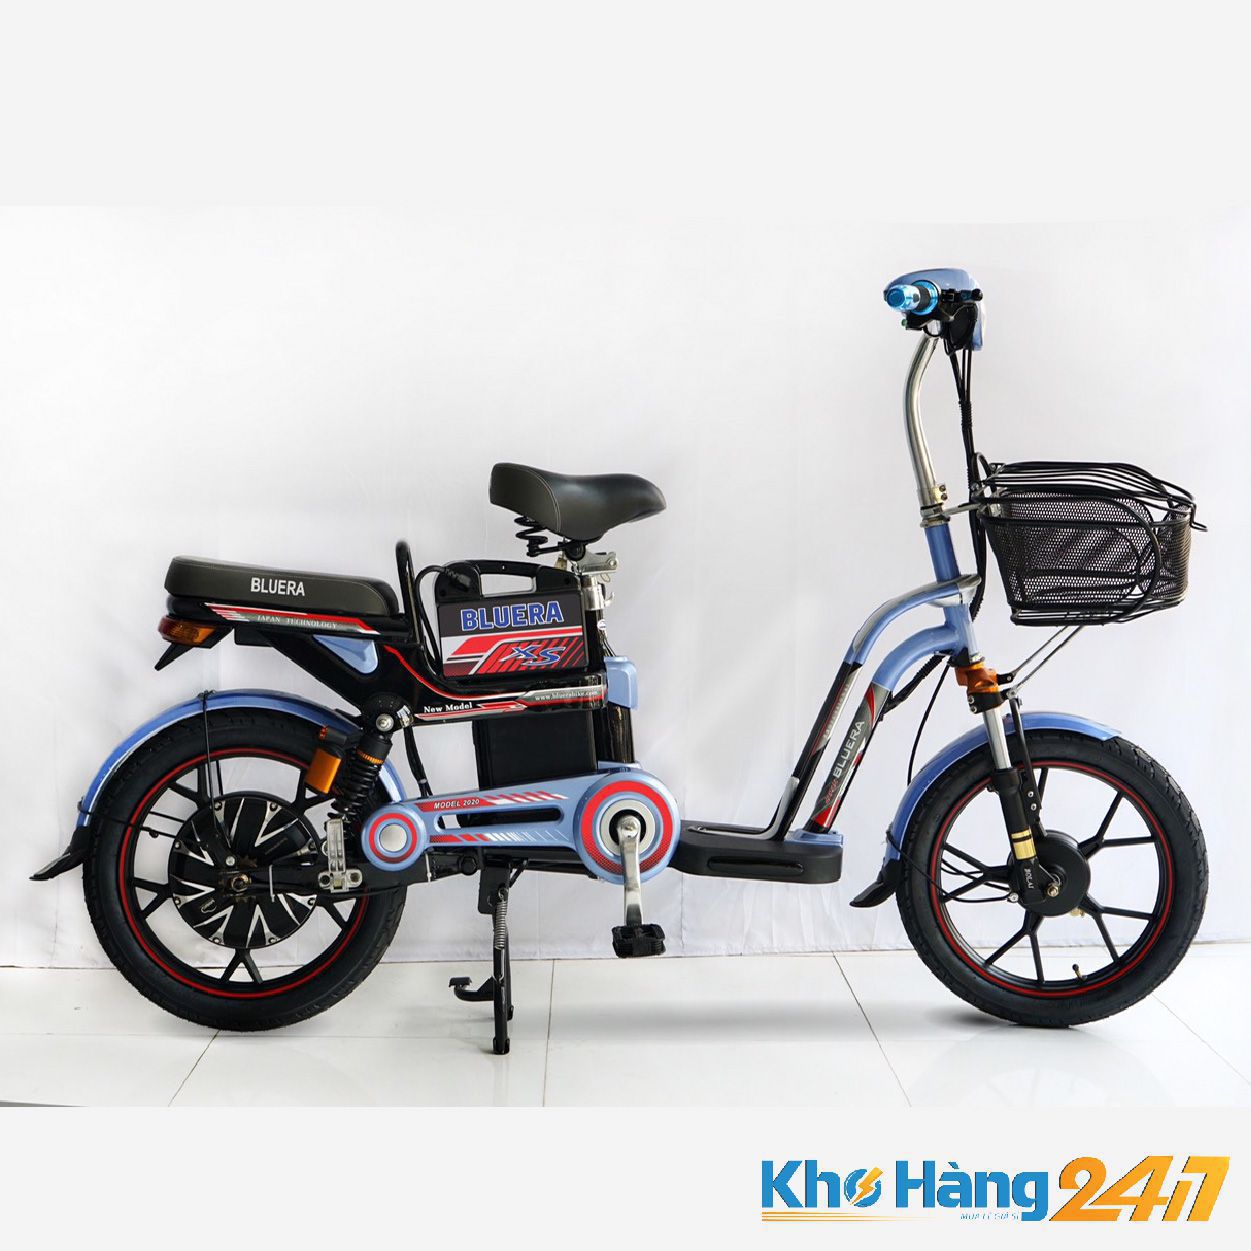 XE DAP DIEN BLUERA XS 01 - Mua xe đạp điện mới giá rẻ tại Khohang247.com